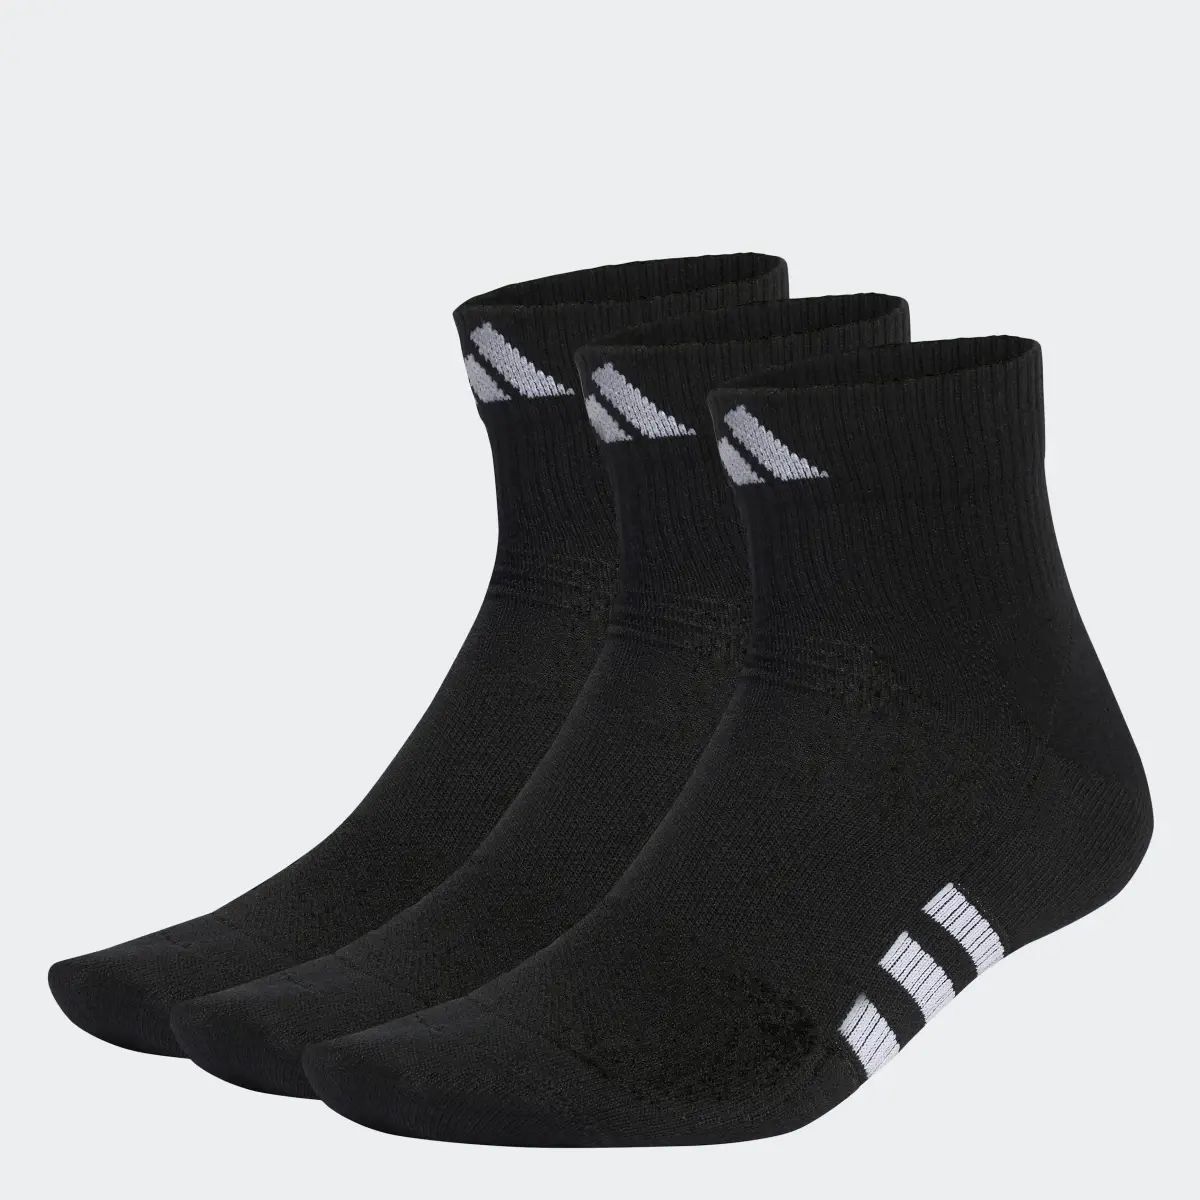 Adidas Performance Light Mid-Cut Socks 3 Pairs. 2